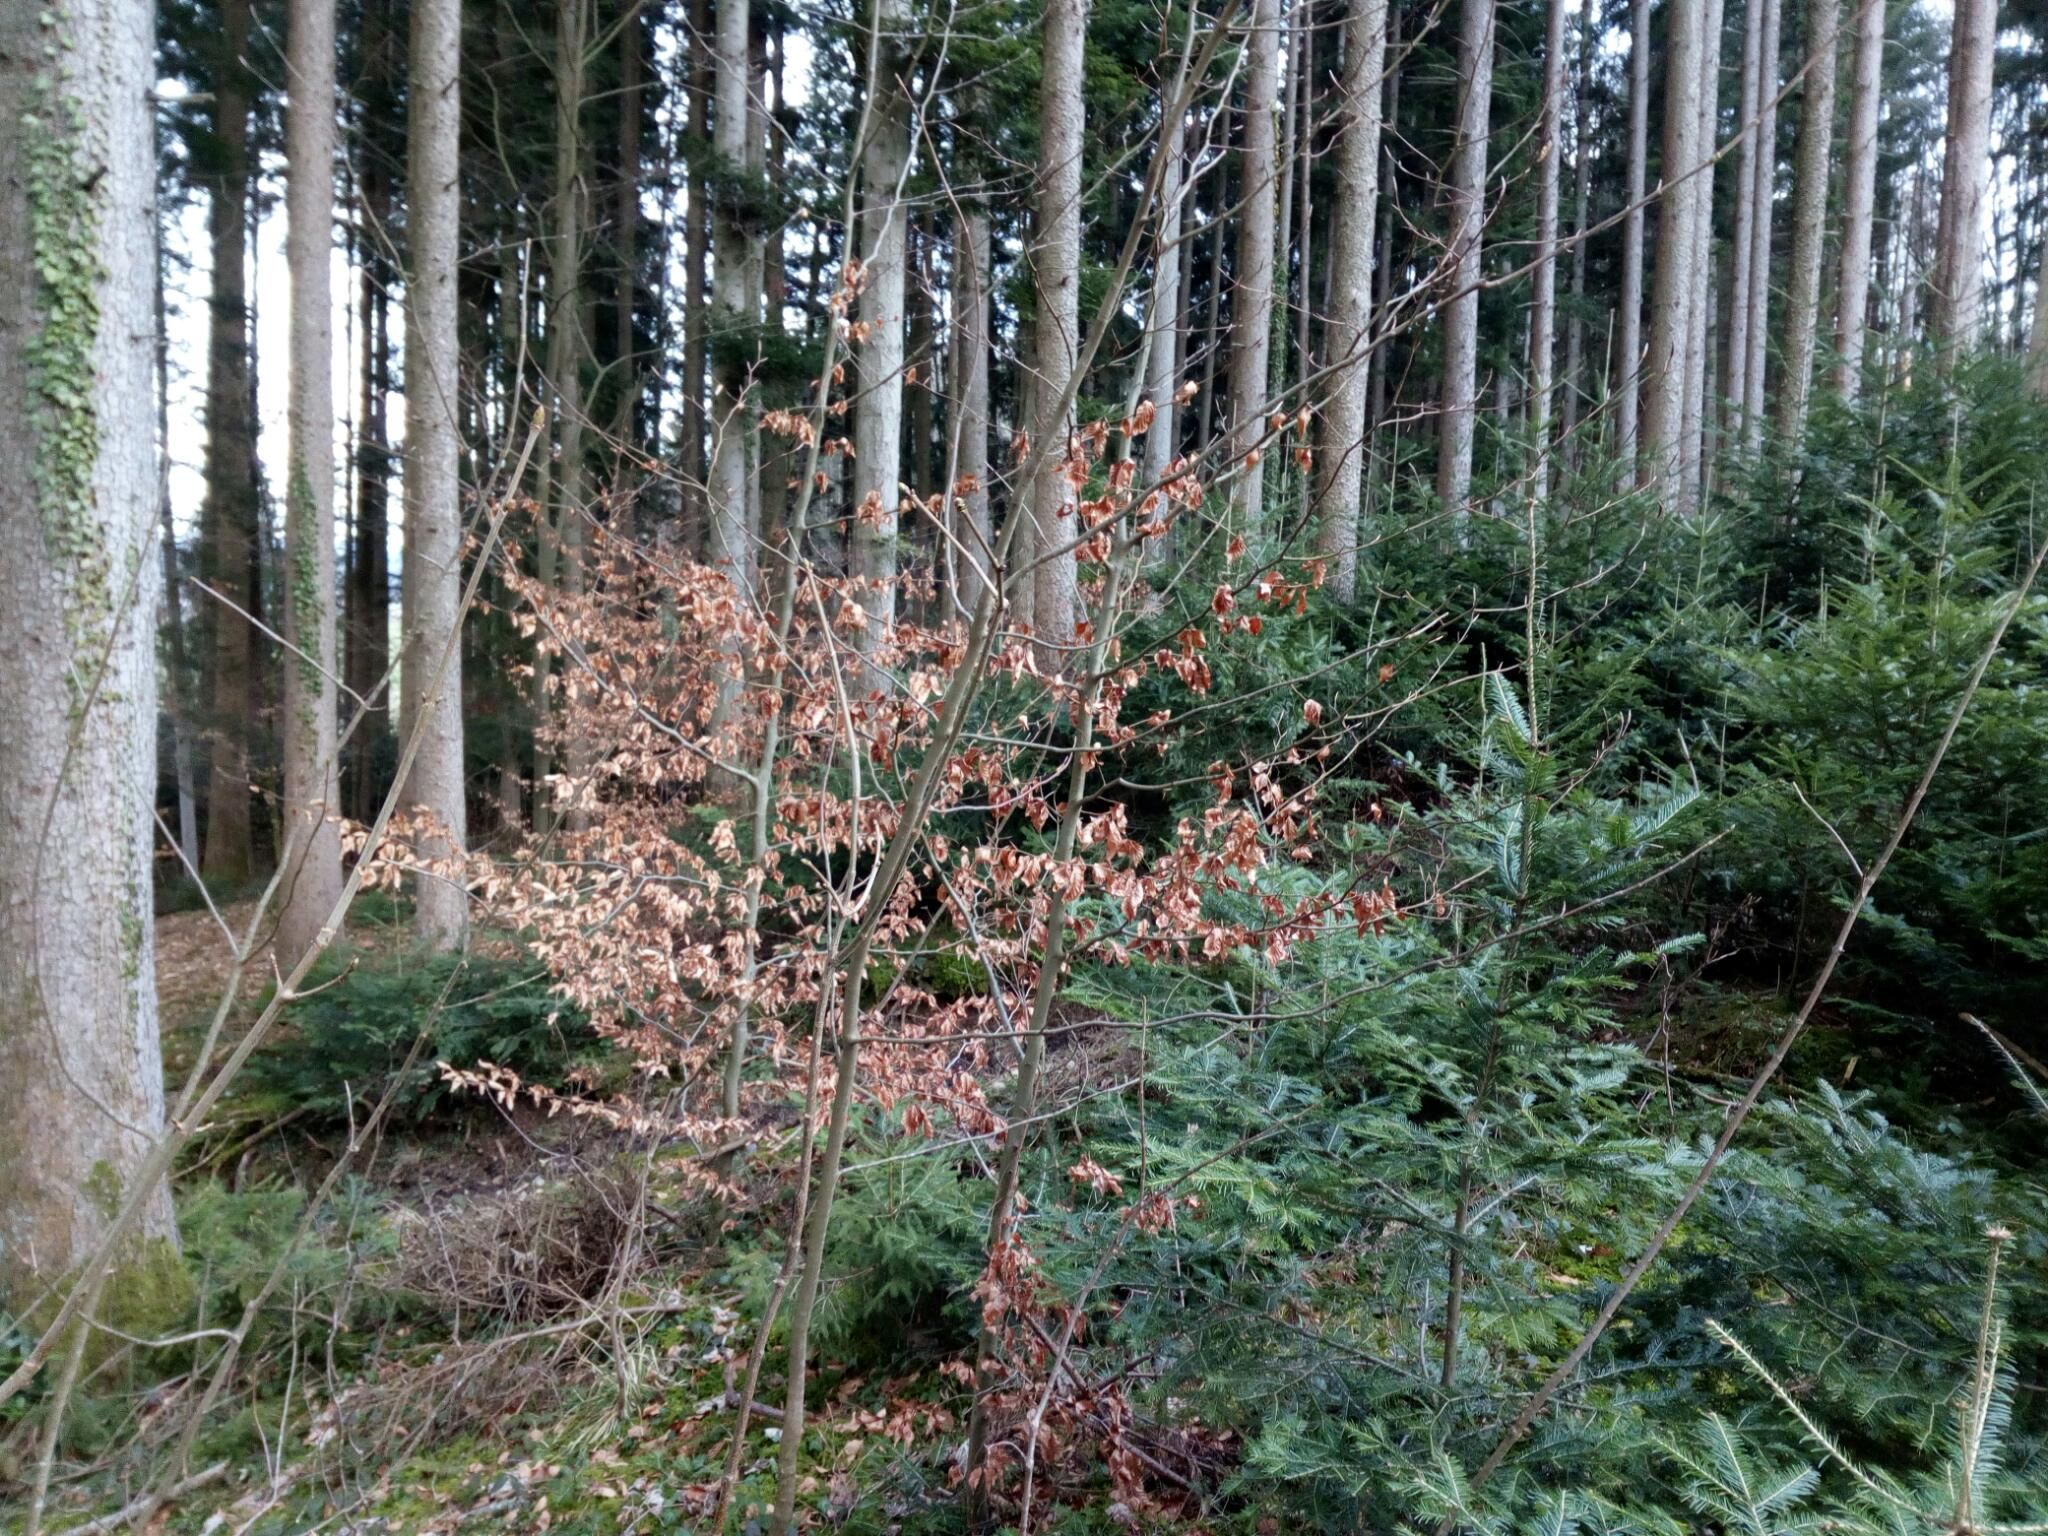 Blick in einen Wald mit jungen Bäumchen